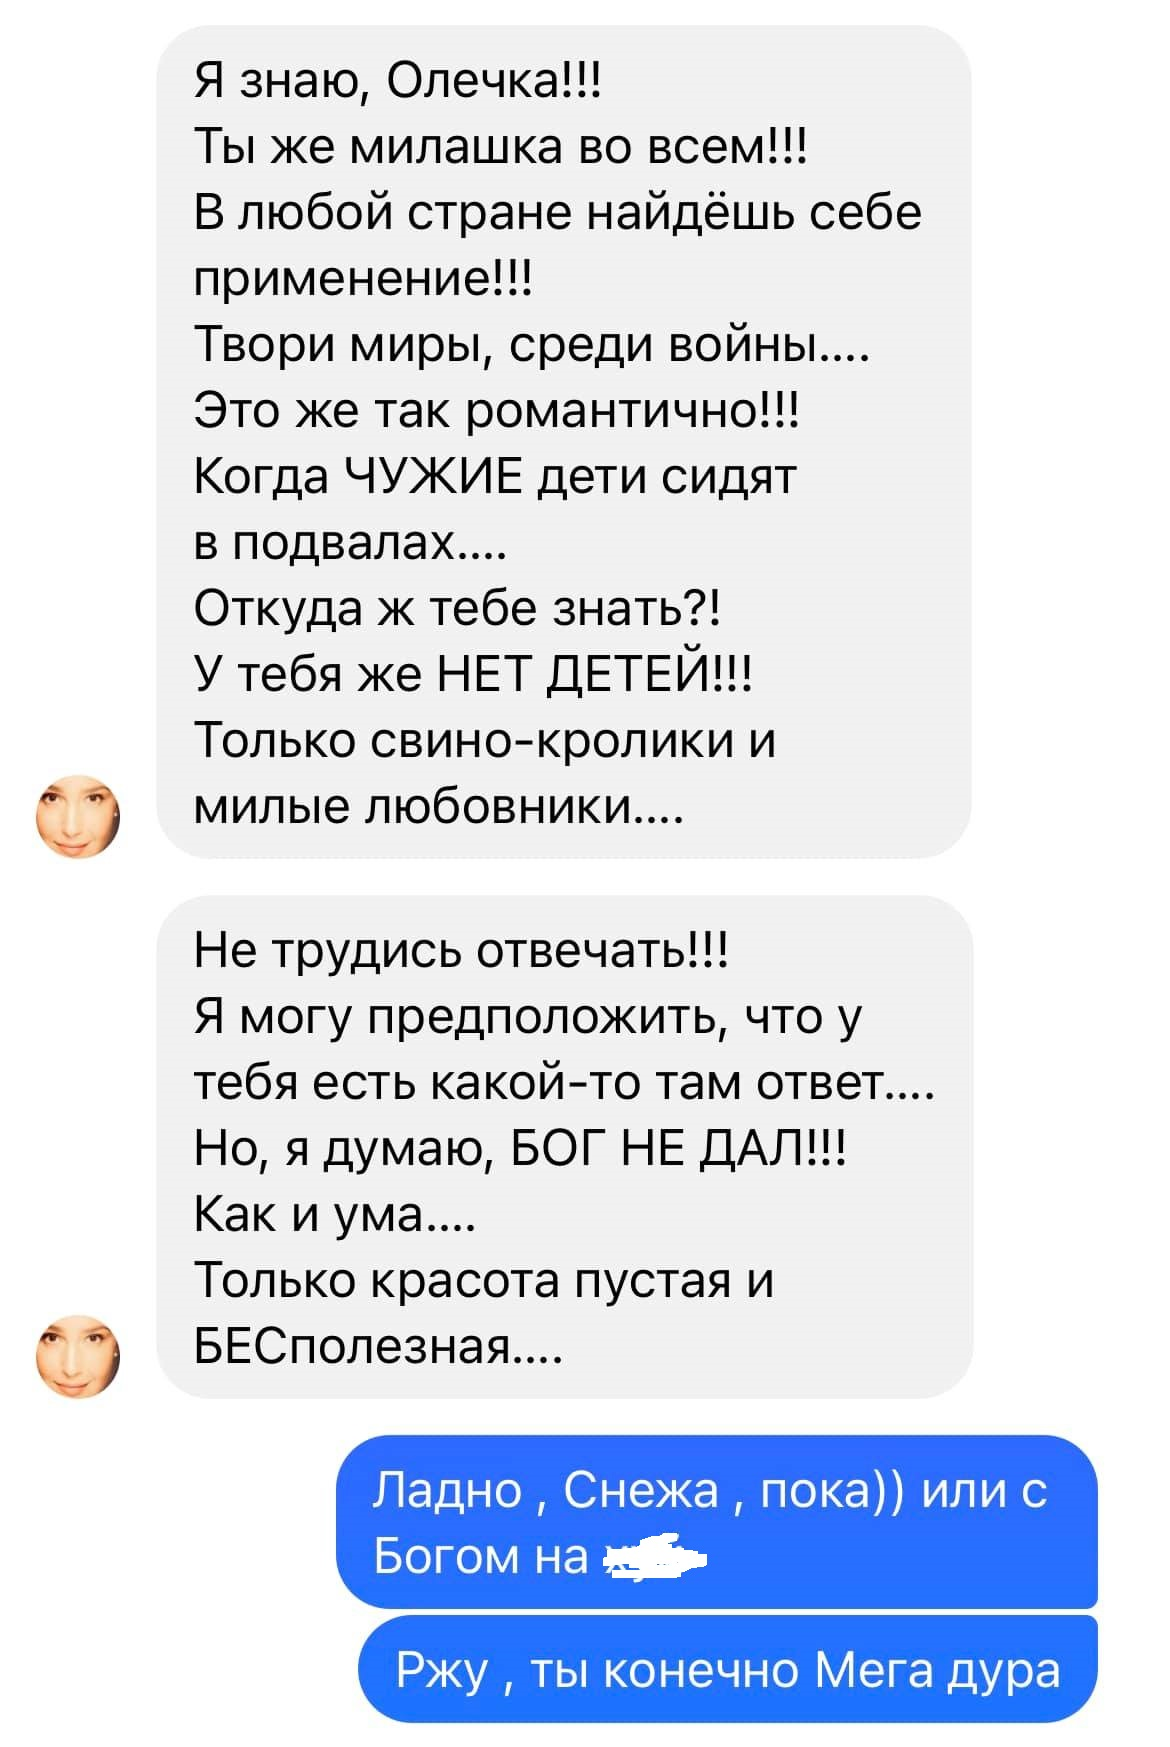 Скриншот сообщения Егоровой. Фото: ФБ НАвроцкой